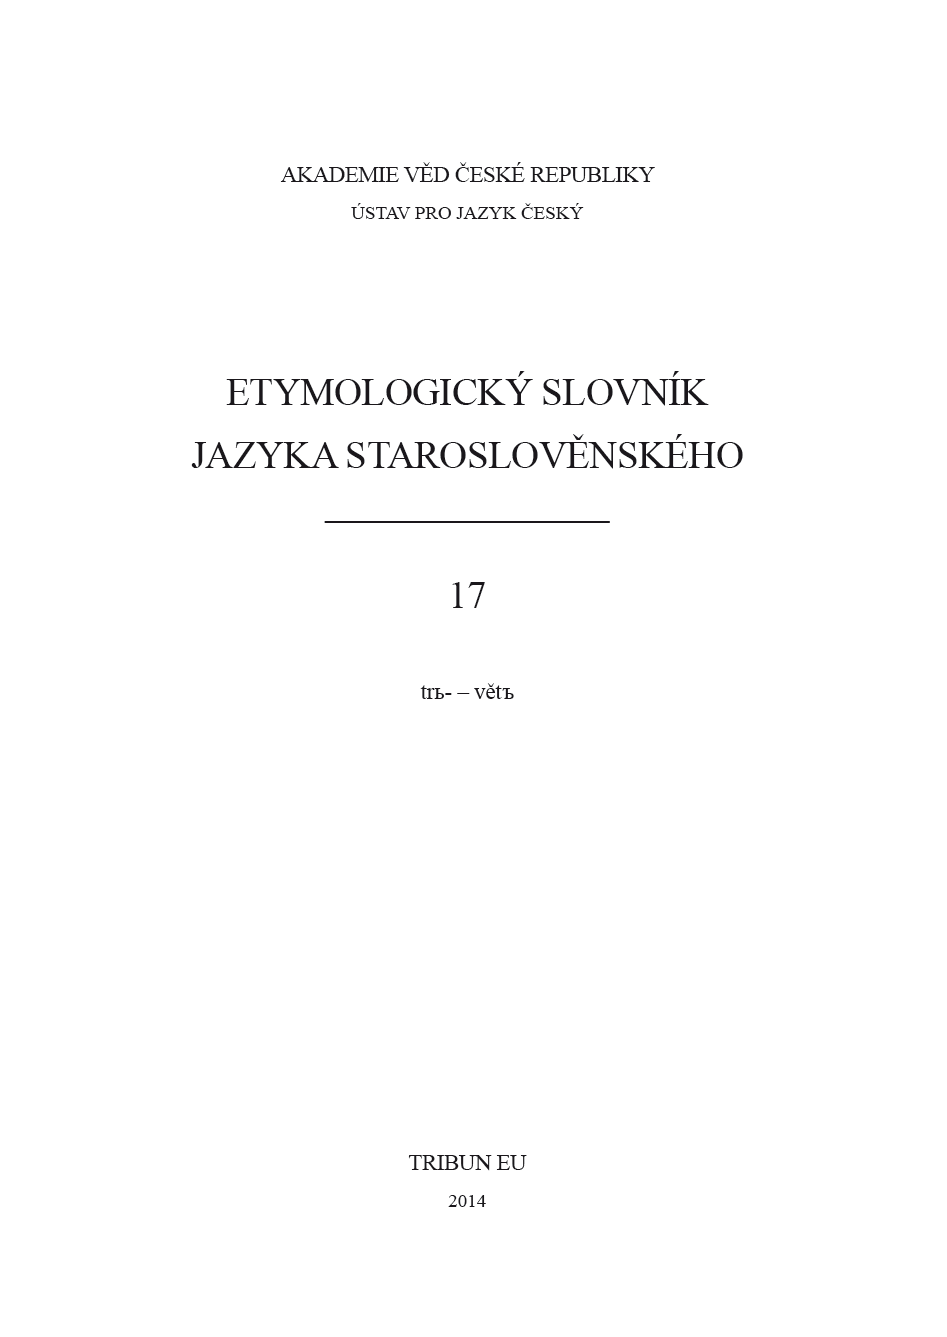 Etymologický slovník jazyka staroslověnského 17